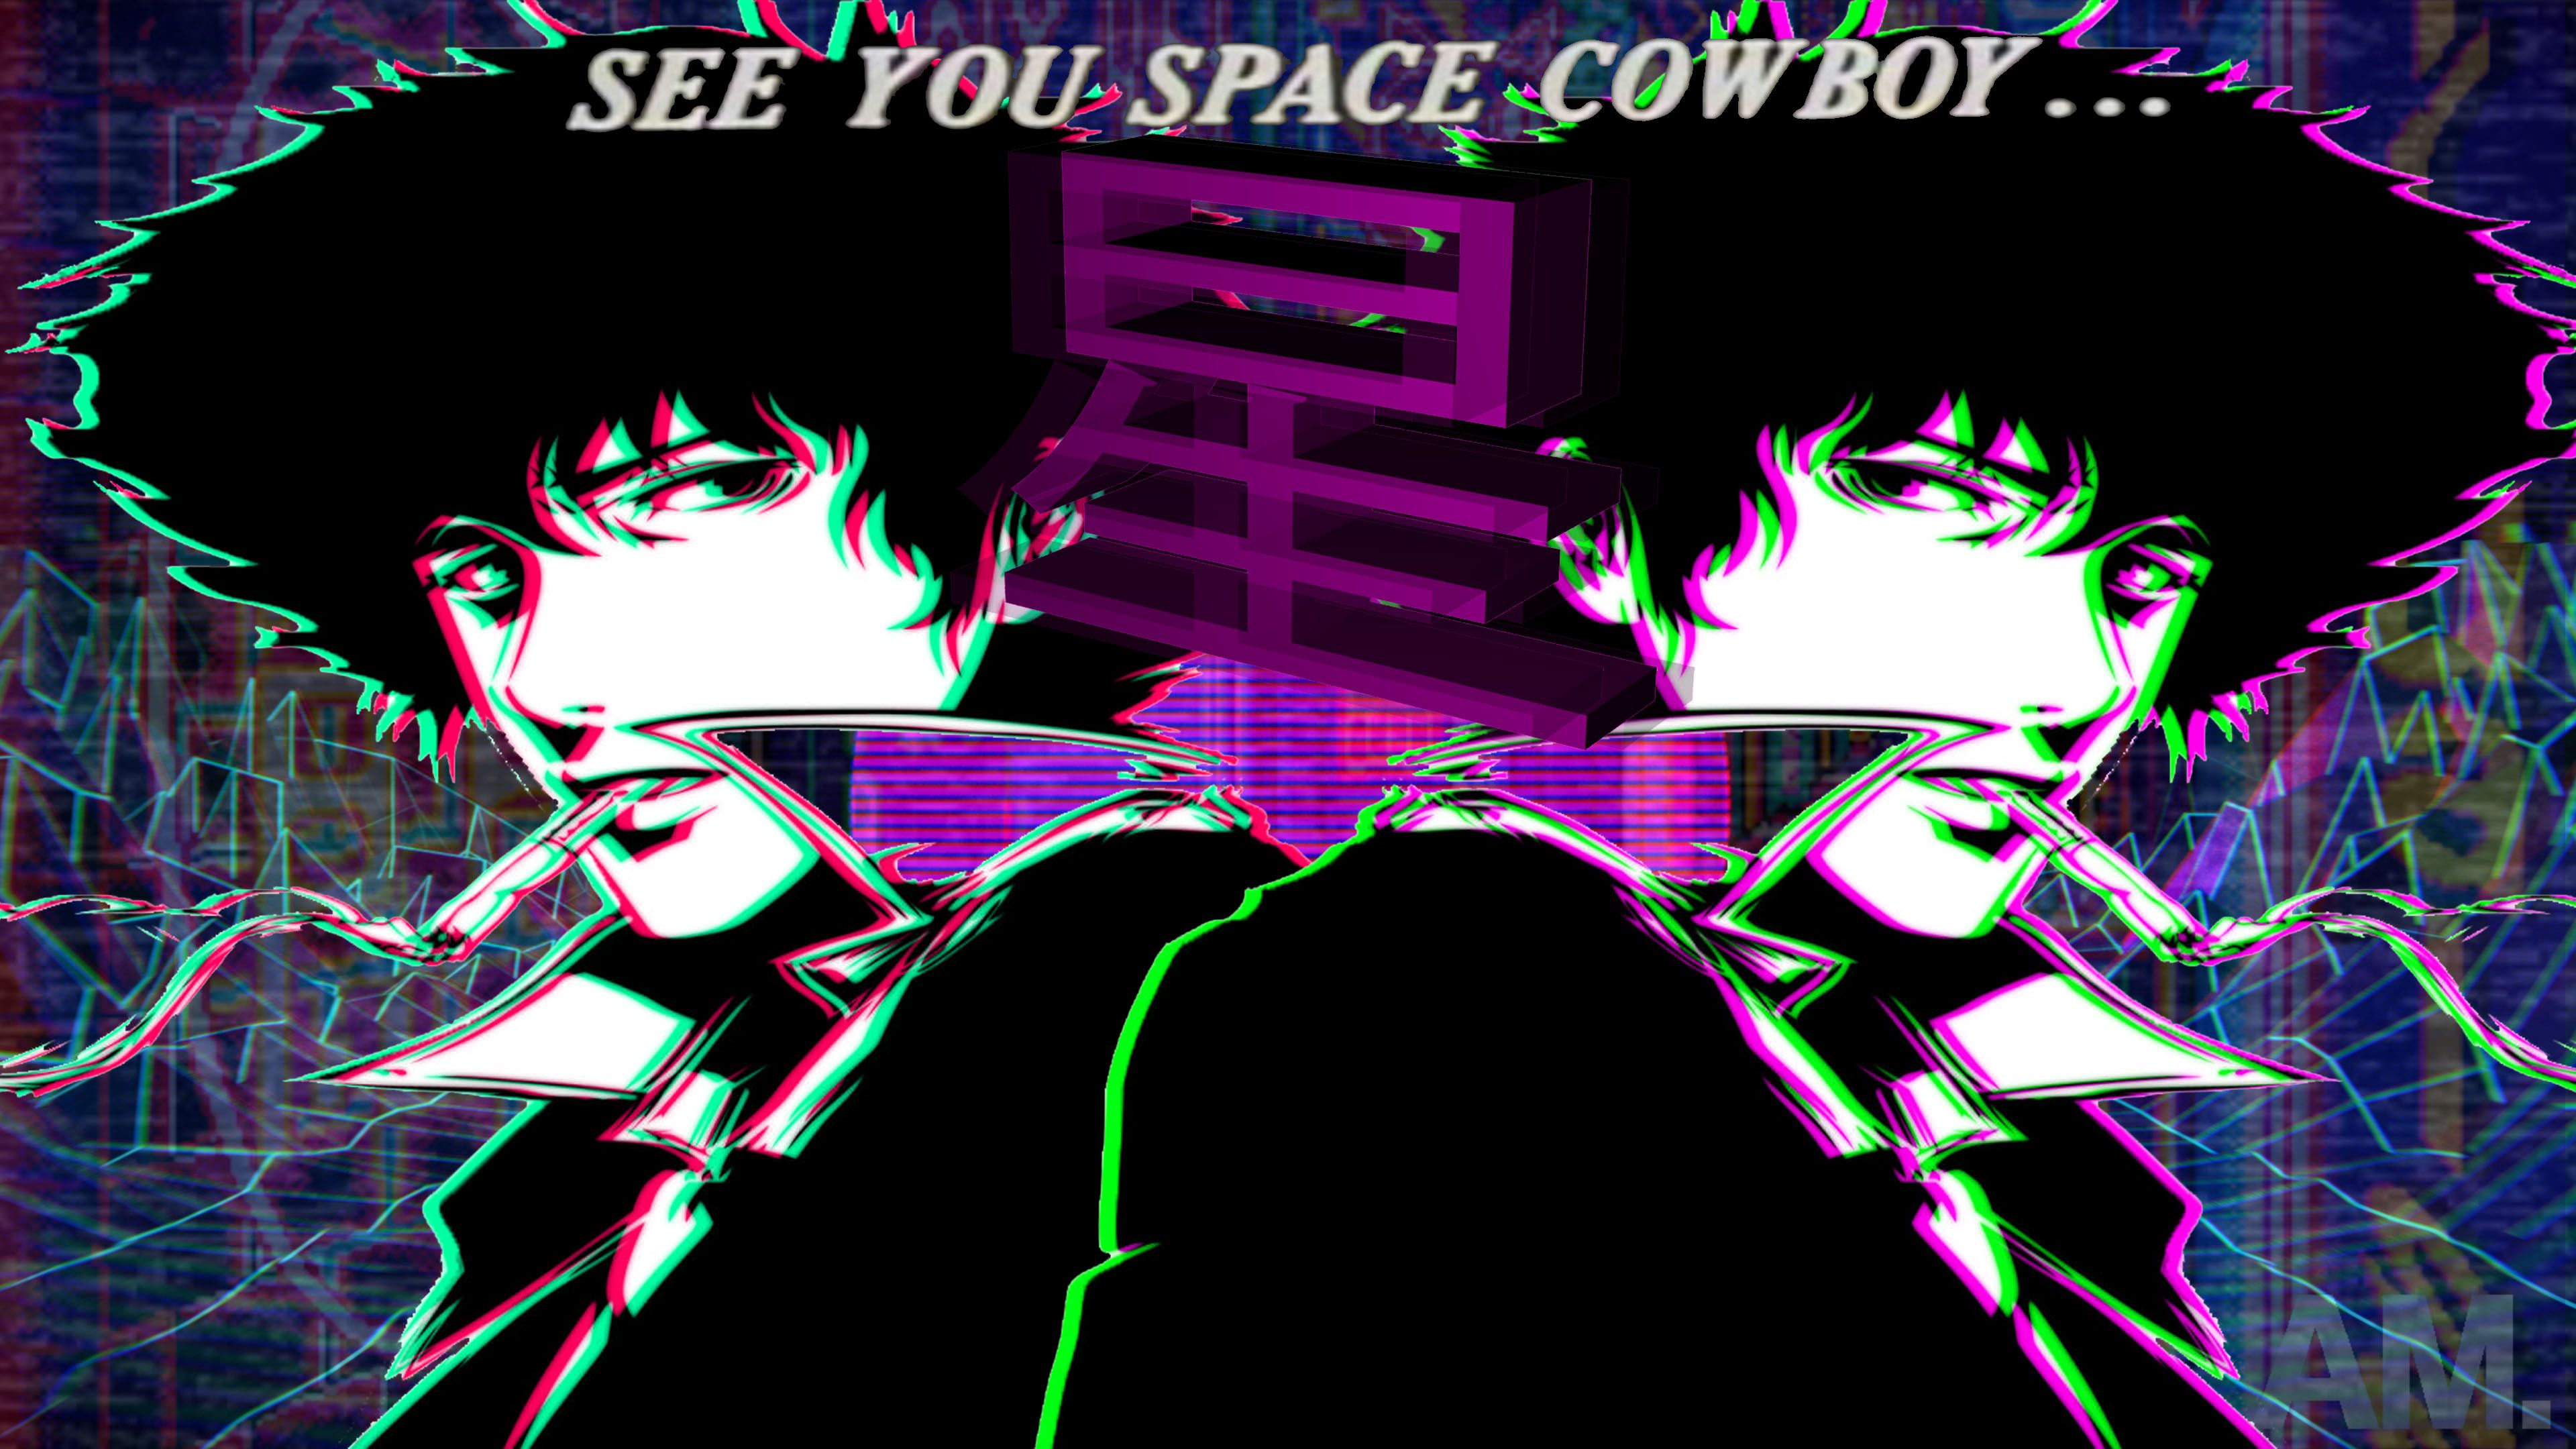 Cowboy Bebop vaporwave 4k Ultra HD Wallpaper. Background Image